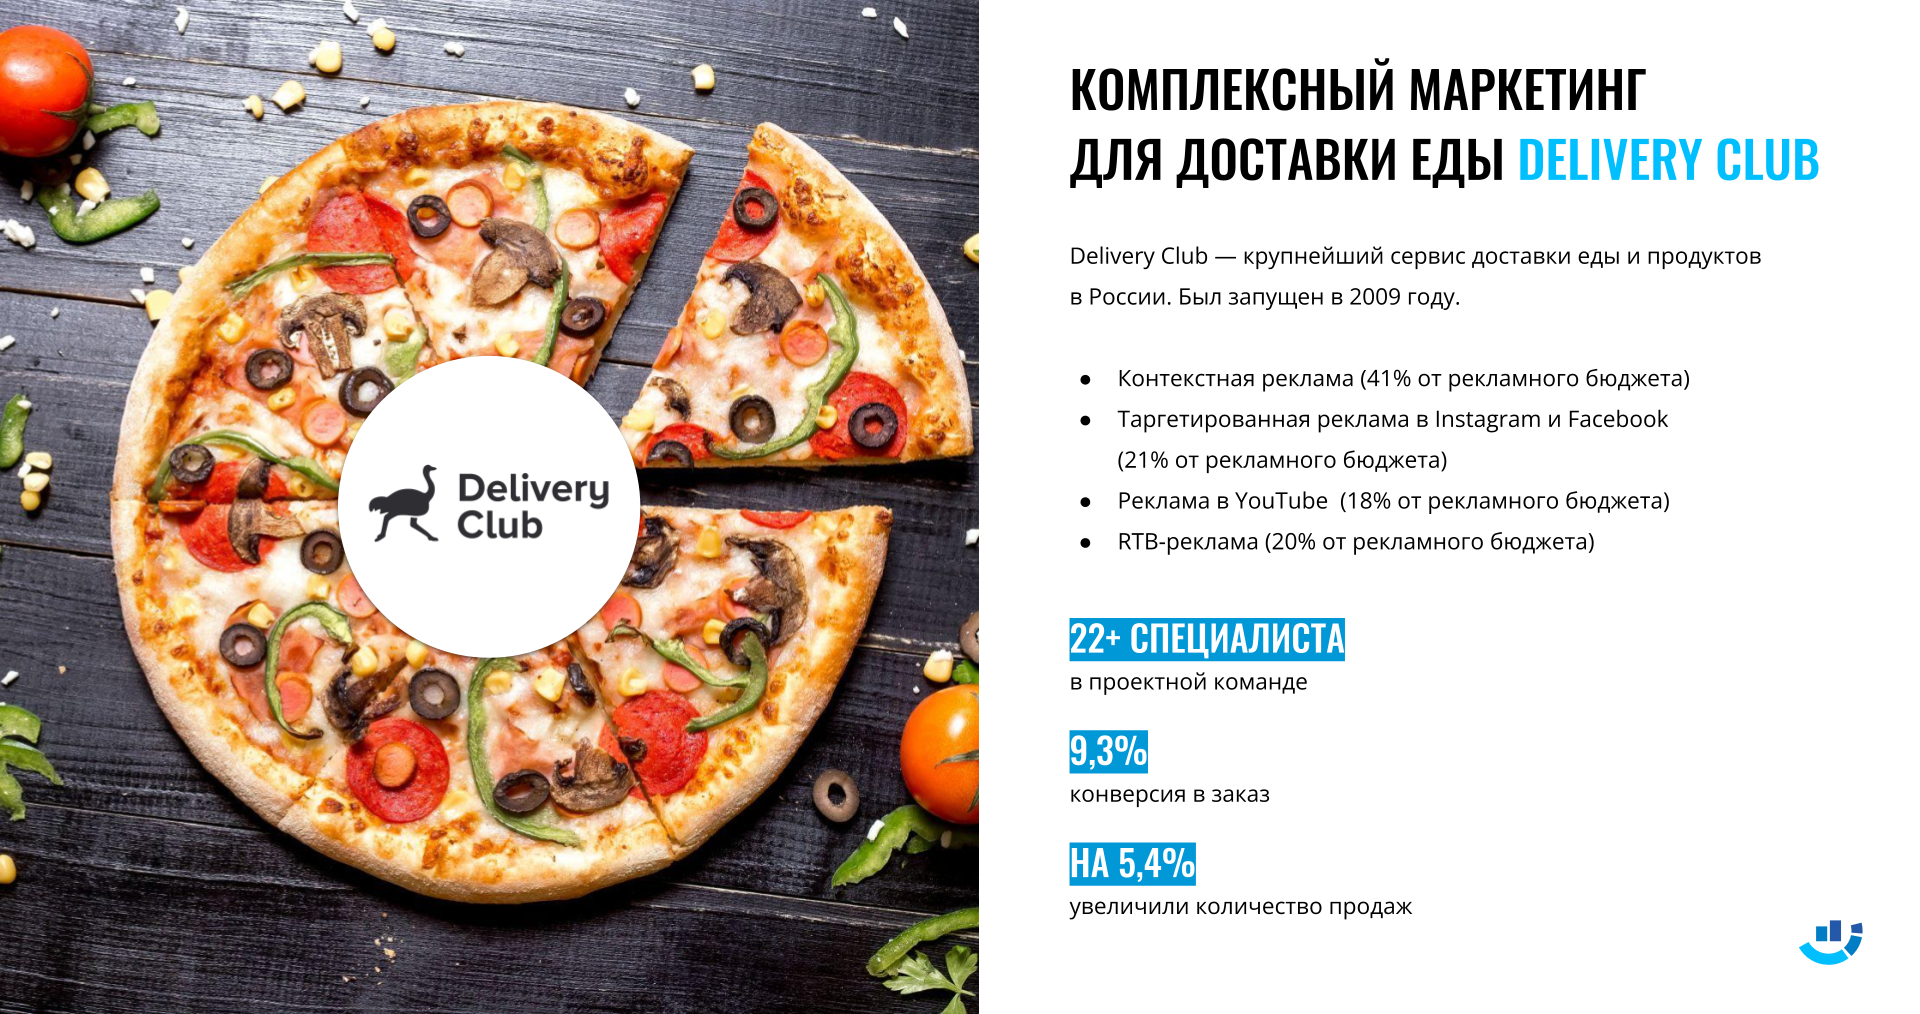 Кейс Интернет-реклама для крупного сервиса доставки еды. Контекстная реклама, таргетированная реклама, реклама в youtube, rtb реклама